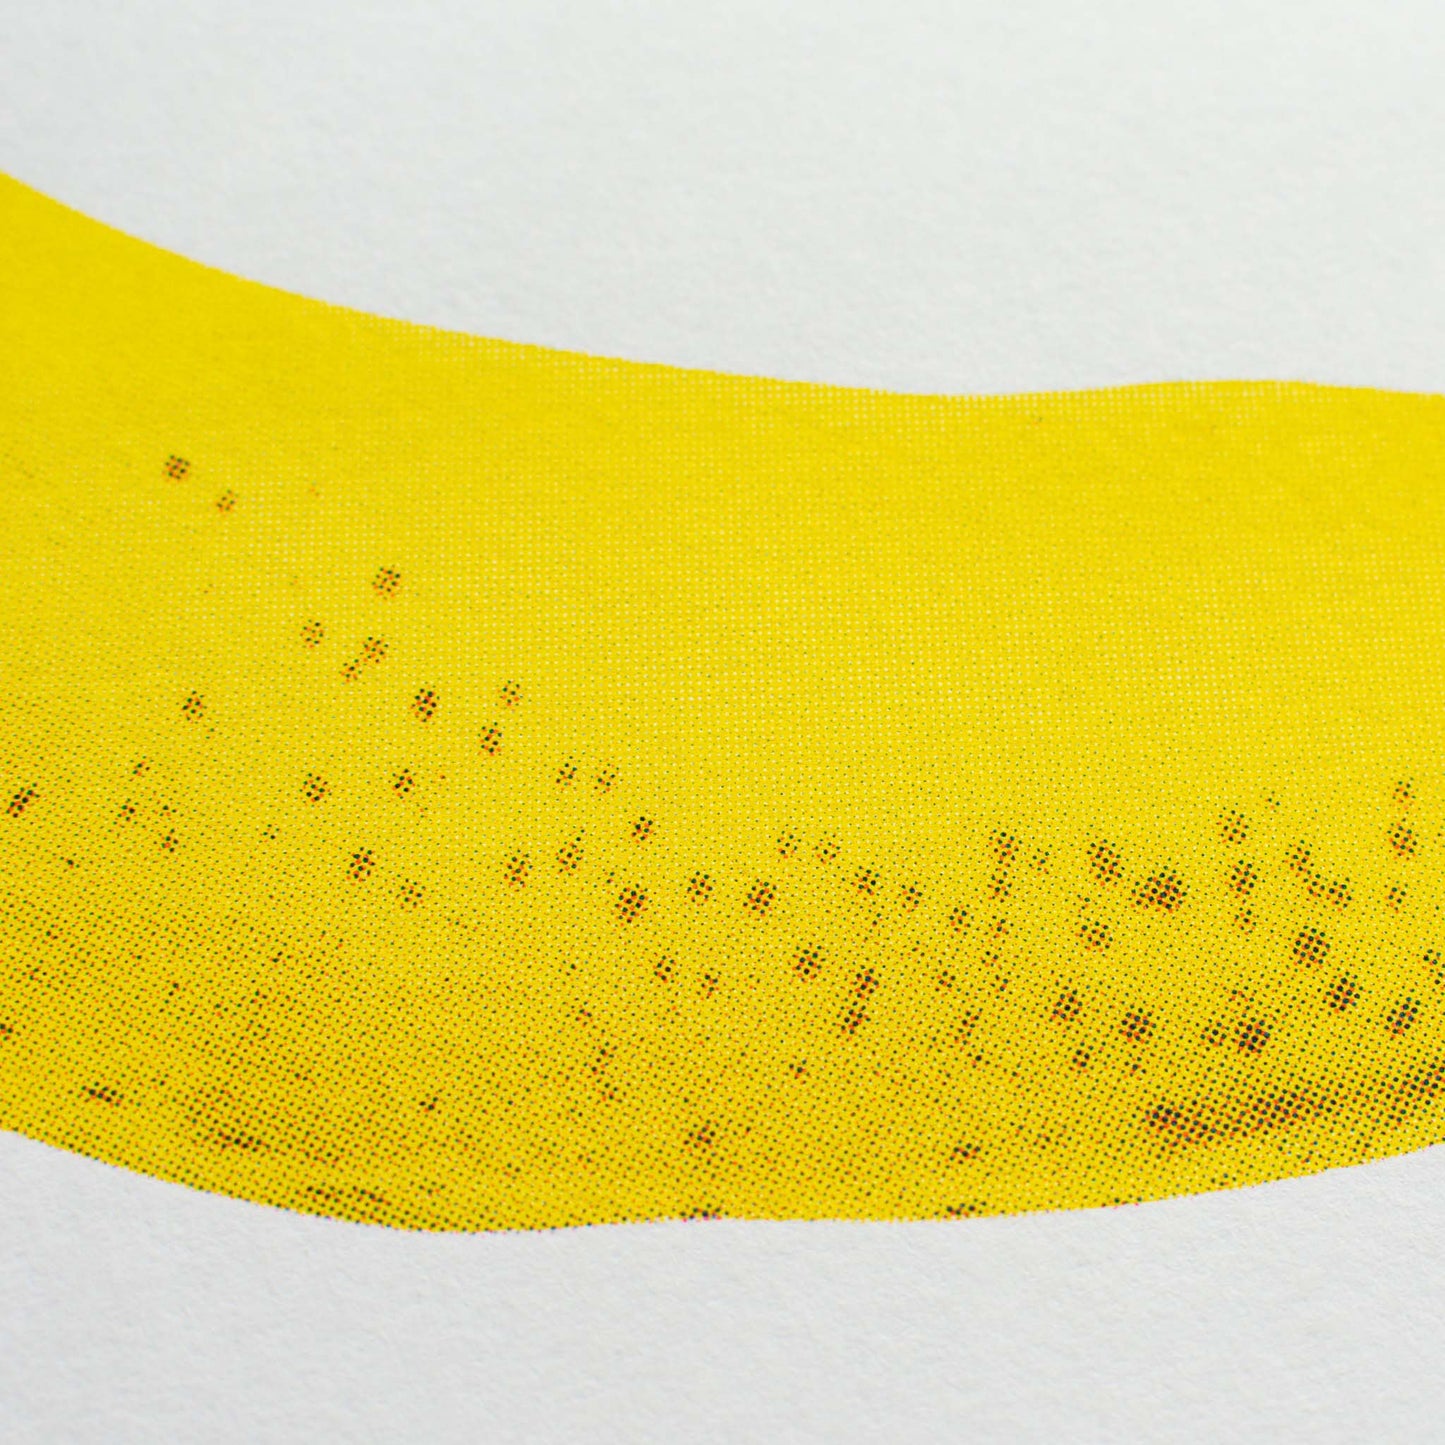 Artprint Banane